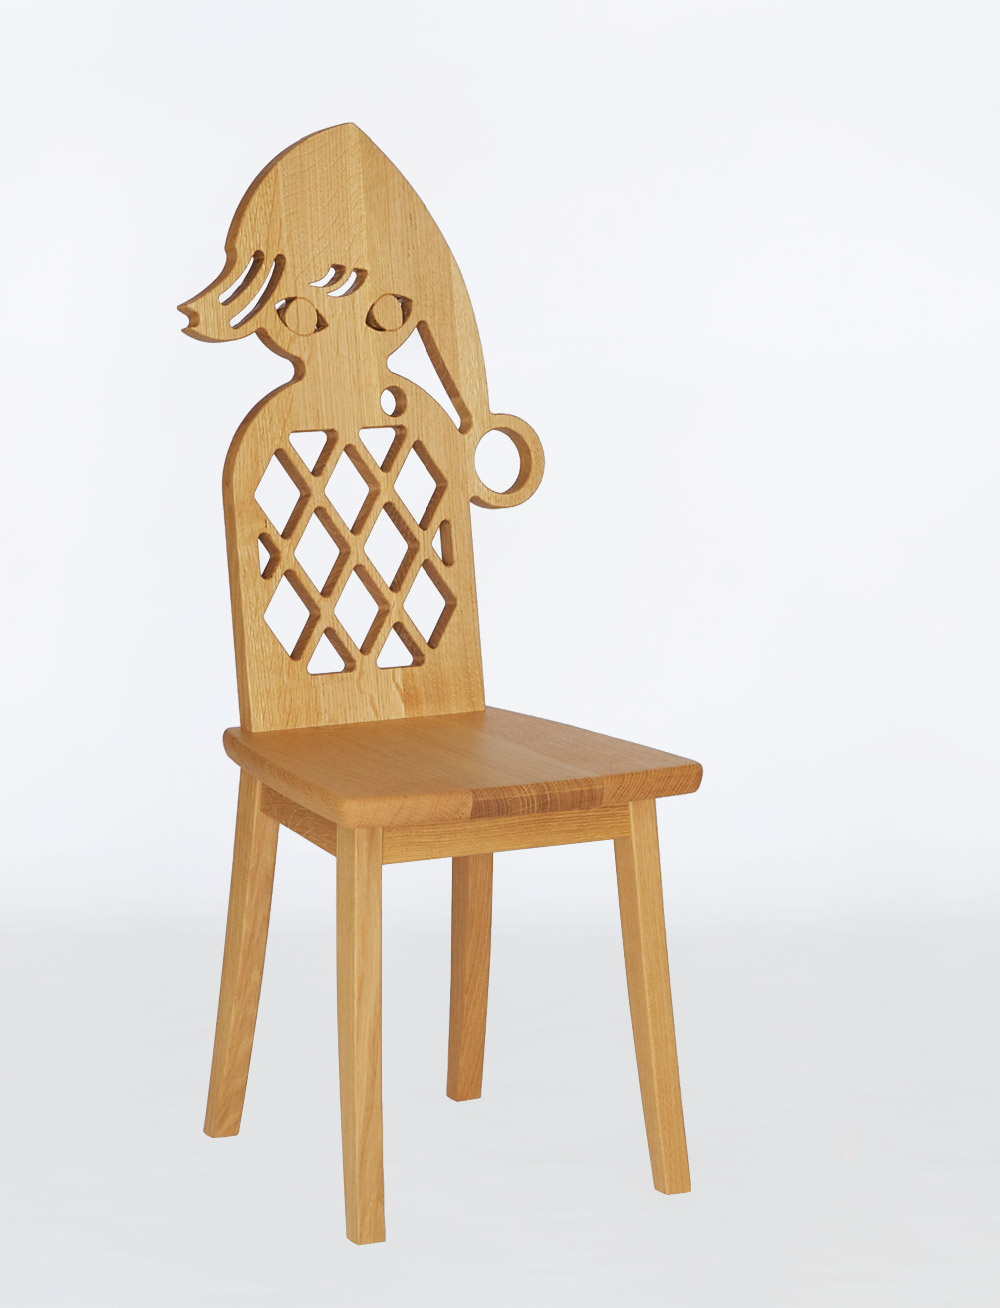 藤城清治さんの小人をモチーフにしたナラの椅子